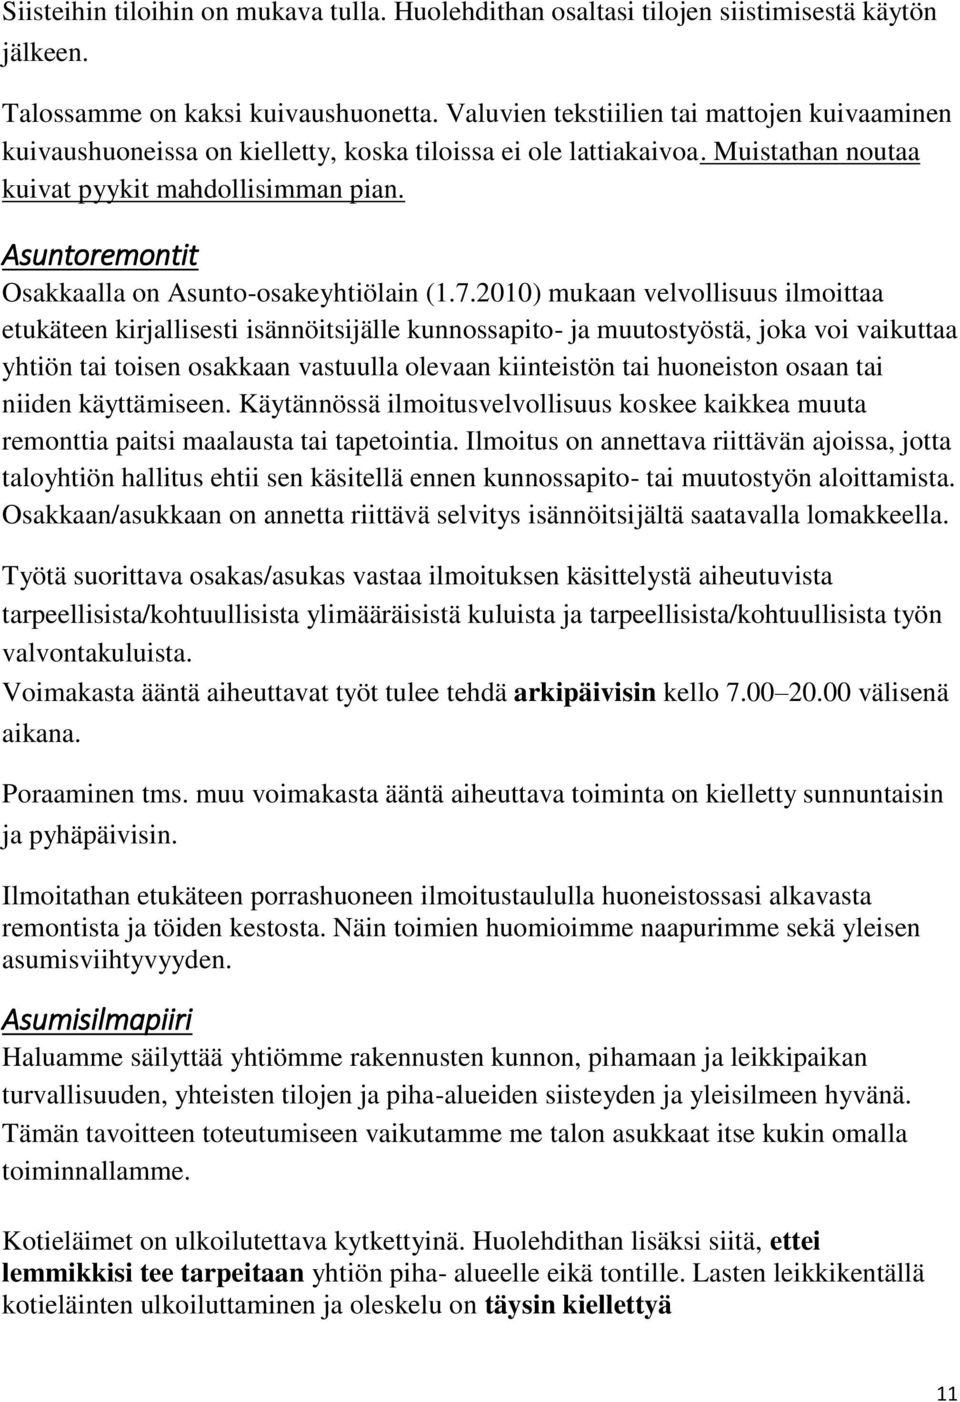 Asuntoremontit Osakkaalla on Asunto-osakeyhtiölain (1.7.